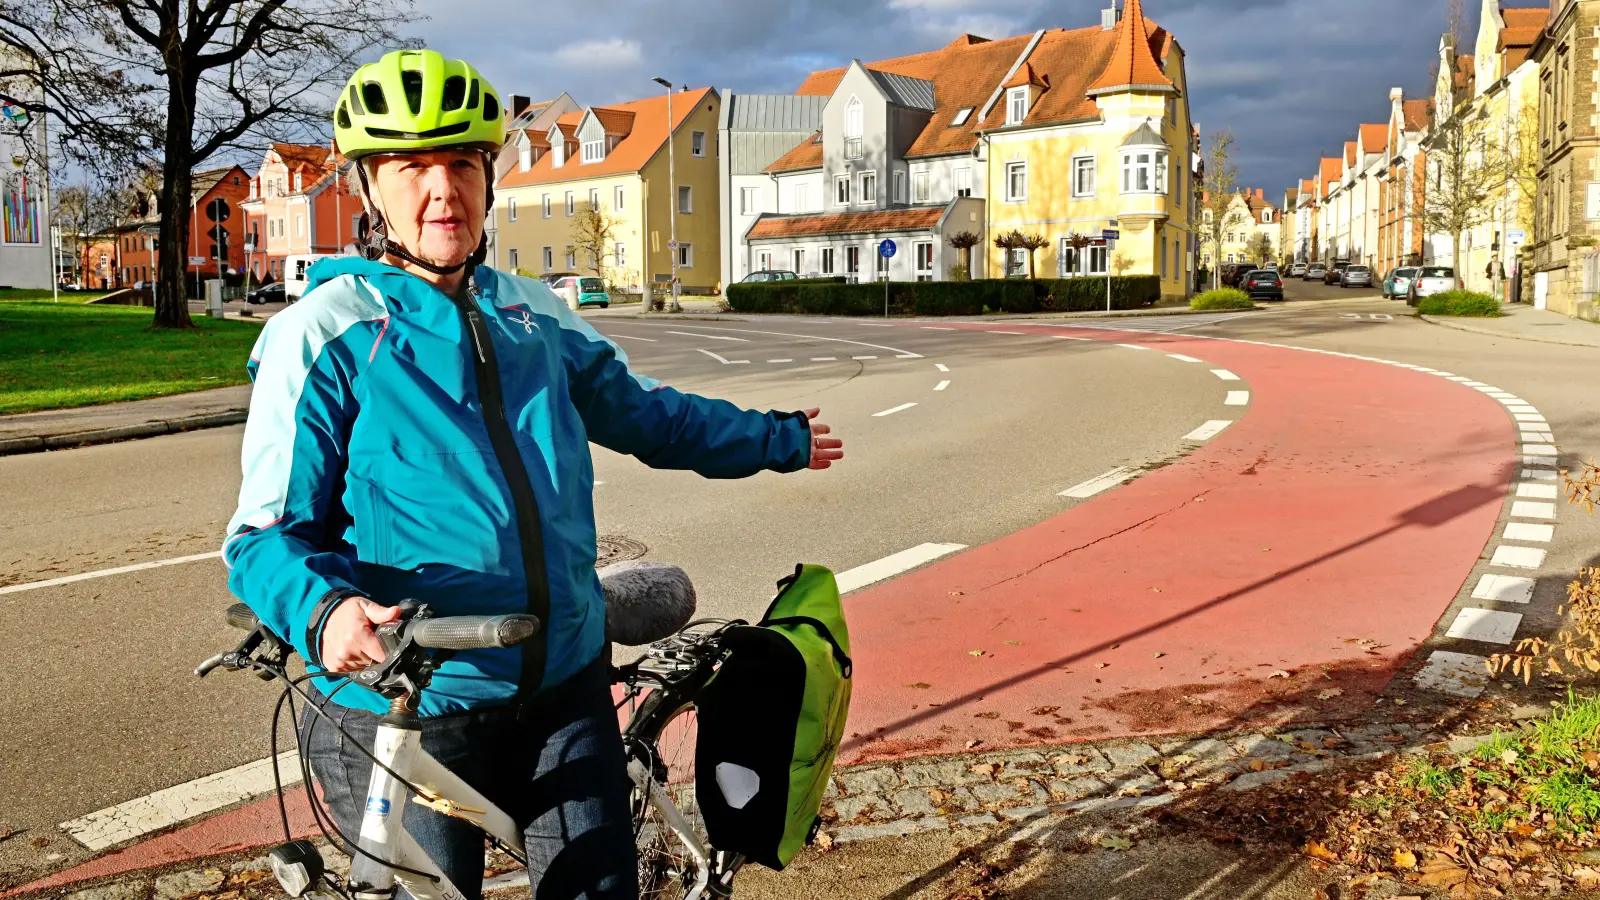 Die Vorsitzende des Vereins Carina, Sigrid Strobel, empfindet rote Fahrradwege als eine gute Lösung, um den Straßenverkehr zwischen Autos und Radfahrern zu regeln. (Foto: Jim Albright)